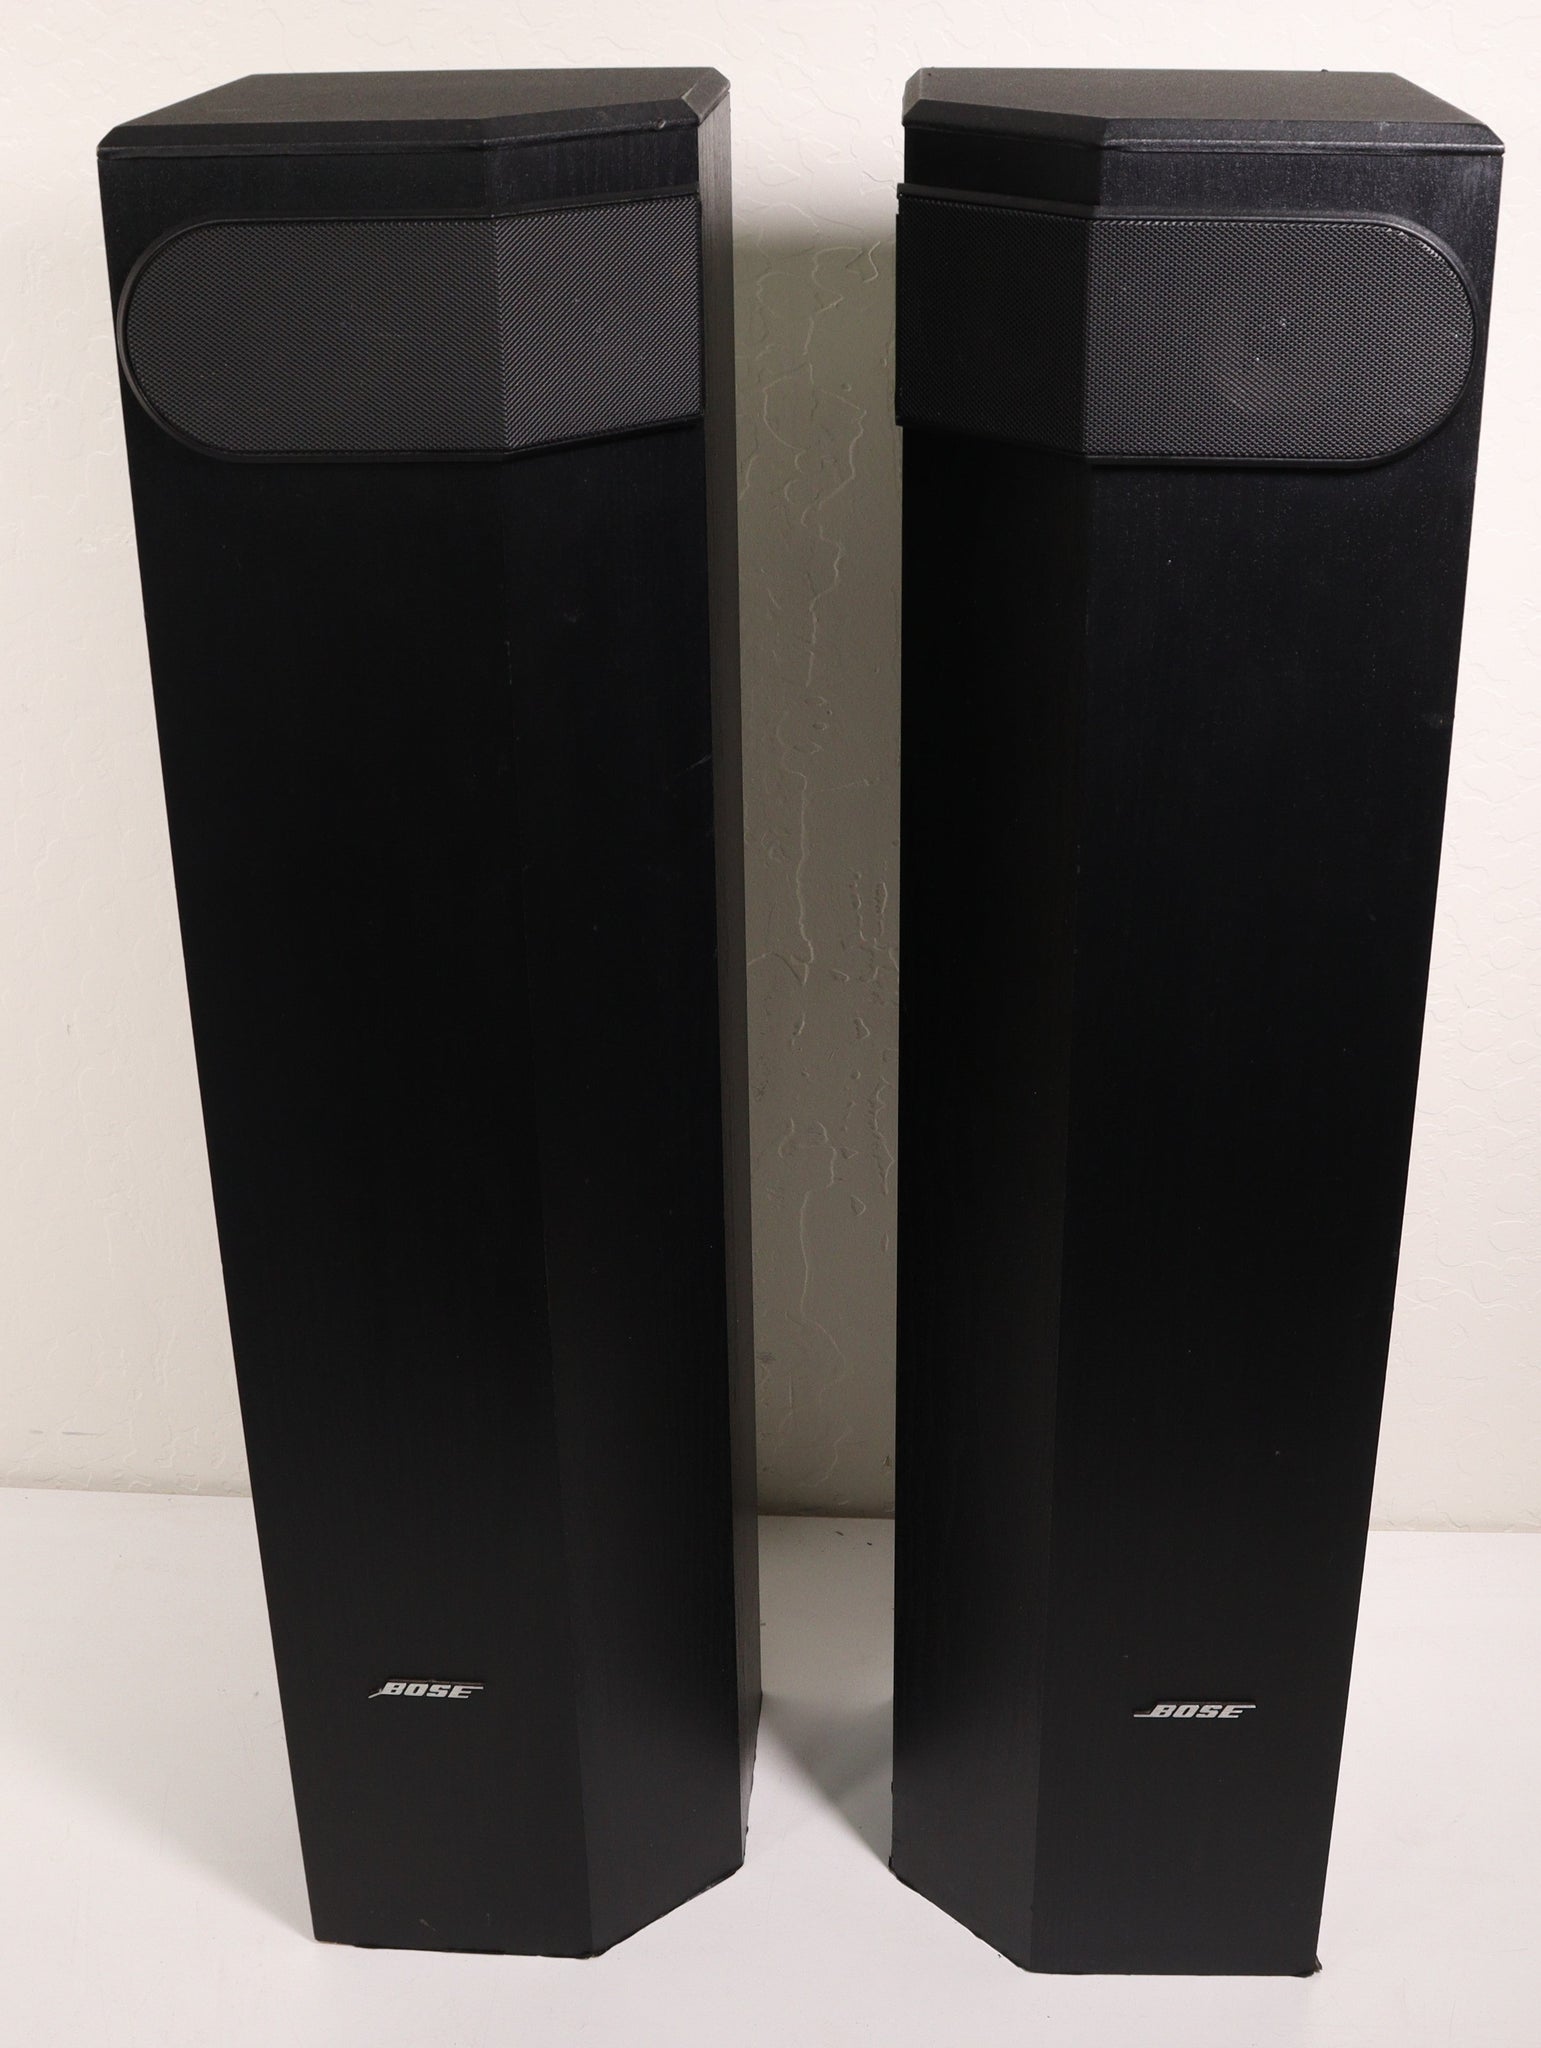 bredde Bot brutalt Bose 501 Series V Speaker Tower Pair Direct / Reflecting 6 Ohms 200 Wa